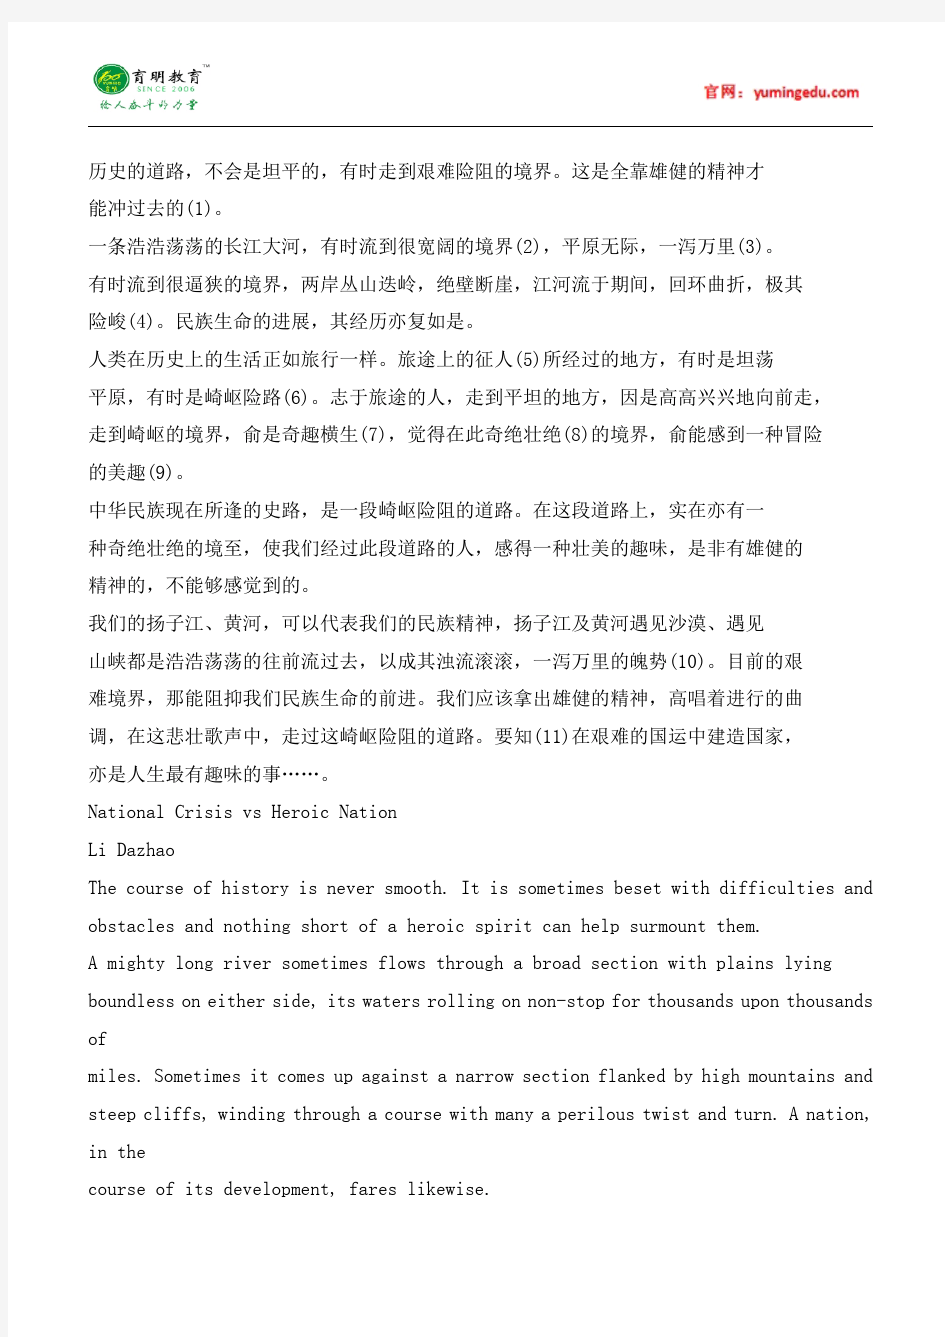 2015年首都师范大学汉语写作与百科知识考研真题,考研参考书,考研大纲,考研经验,考研分数线,报录比